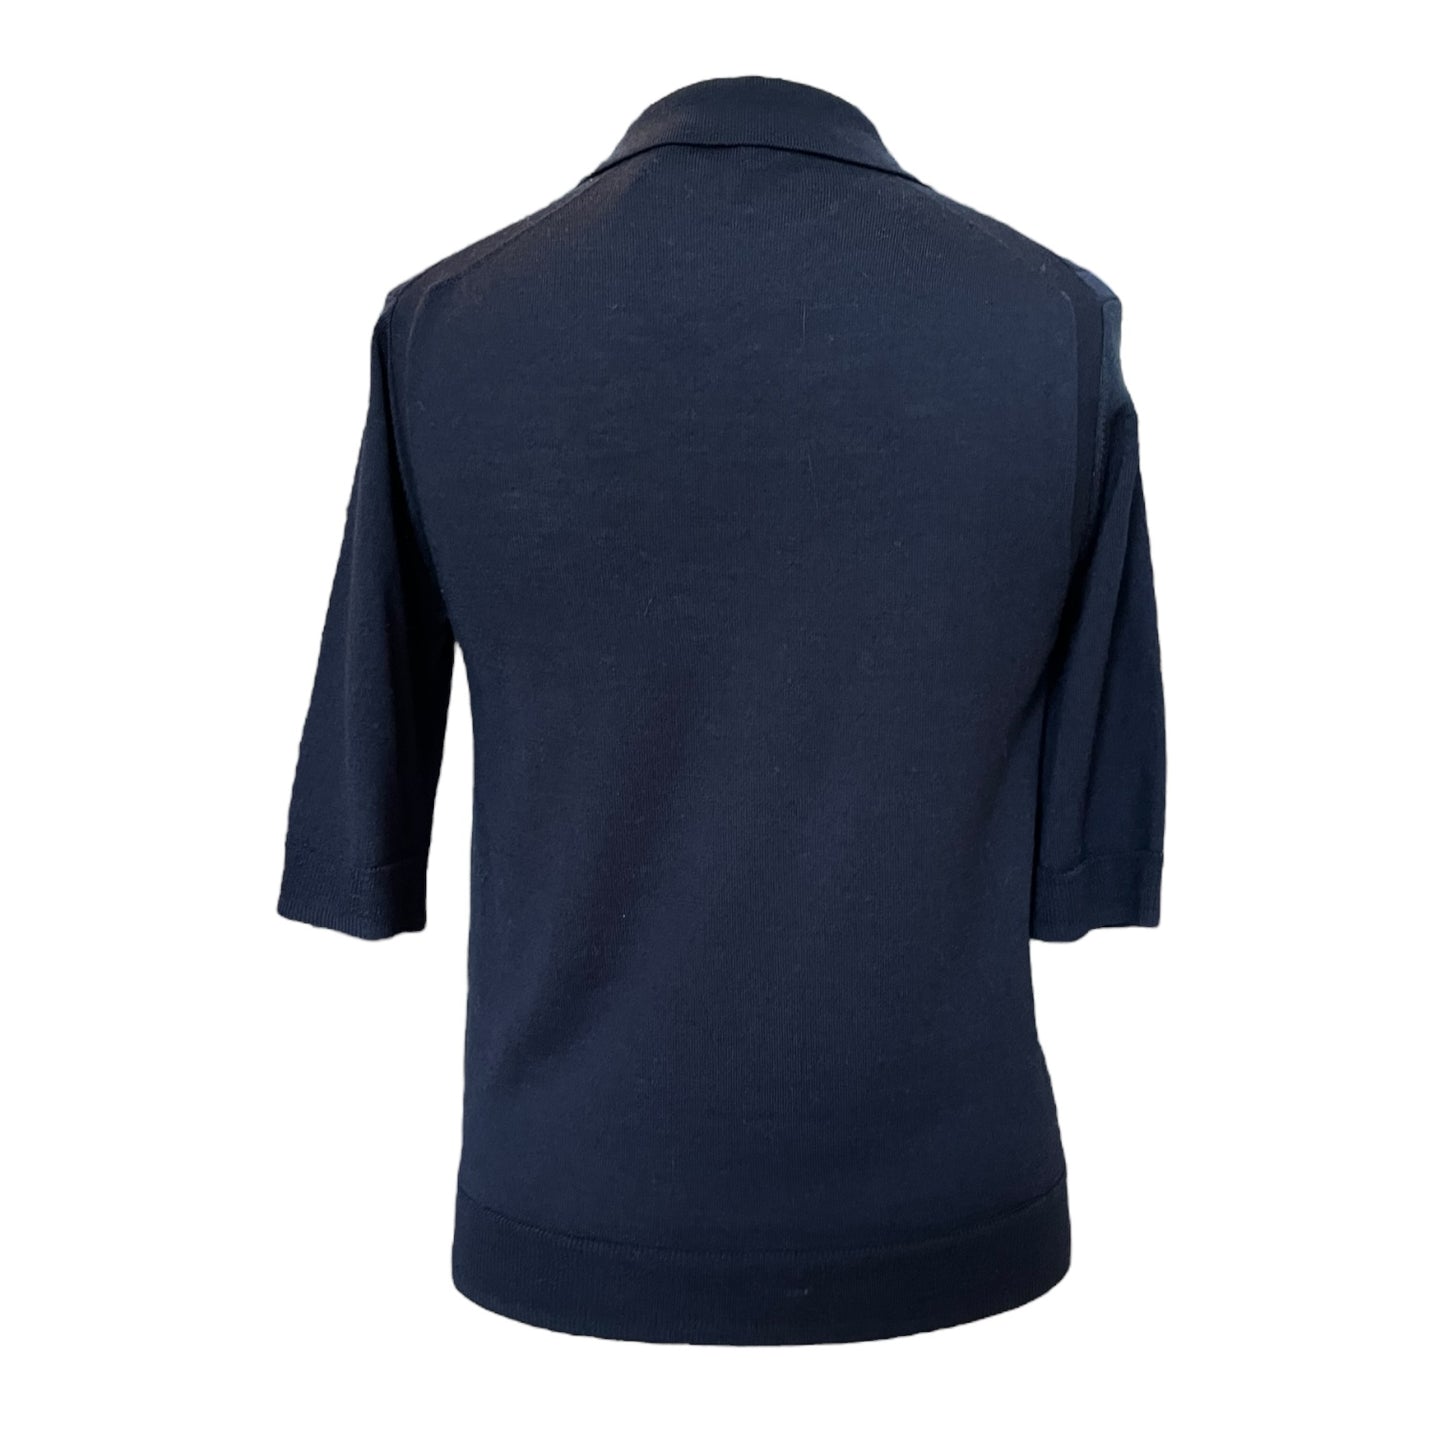 Jigsaw Merino Wool Navy Sweater - 12